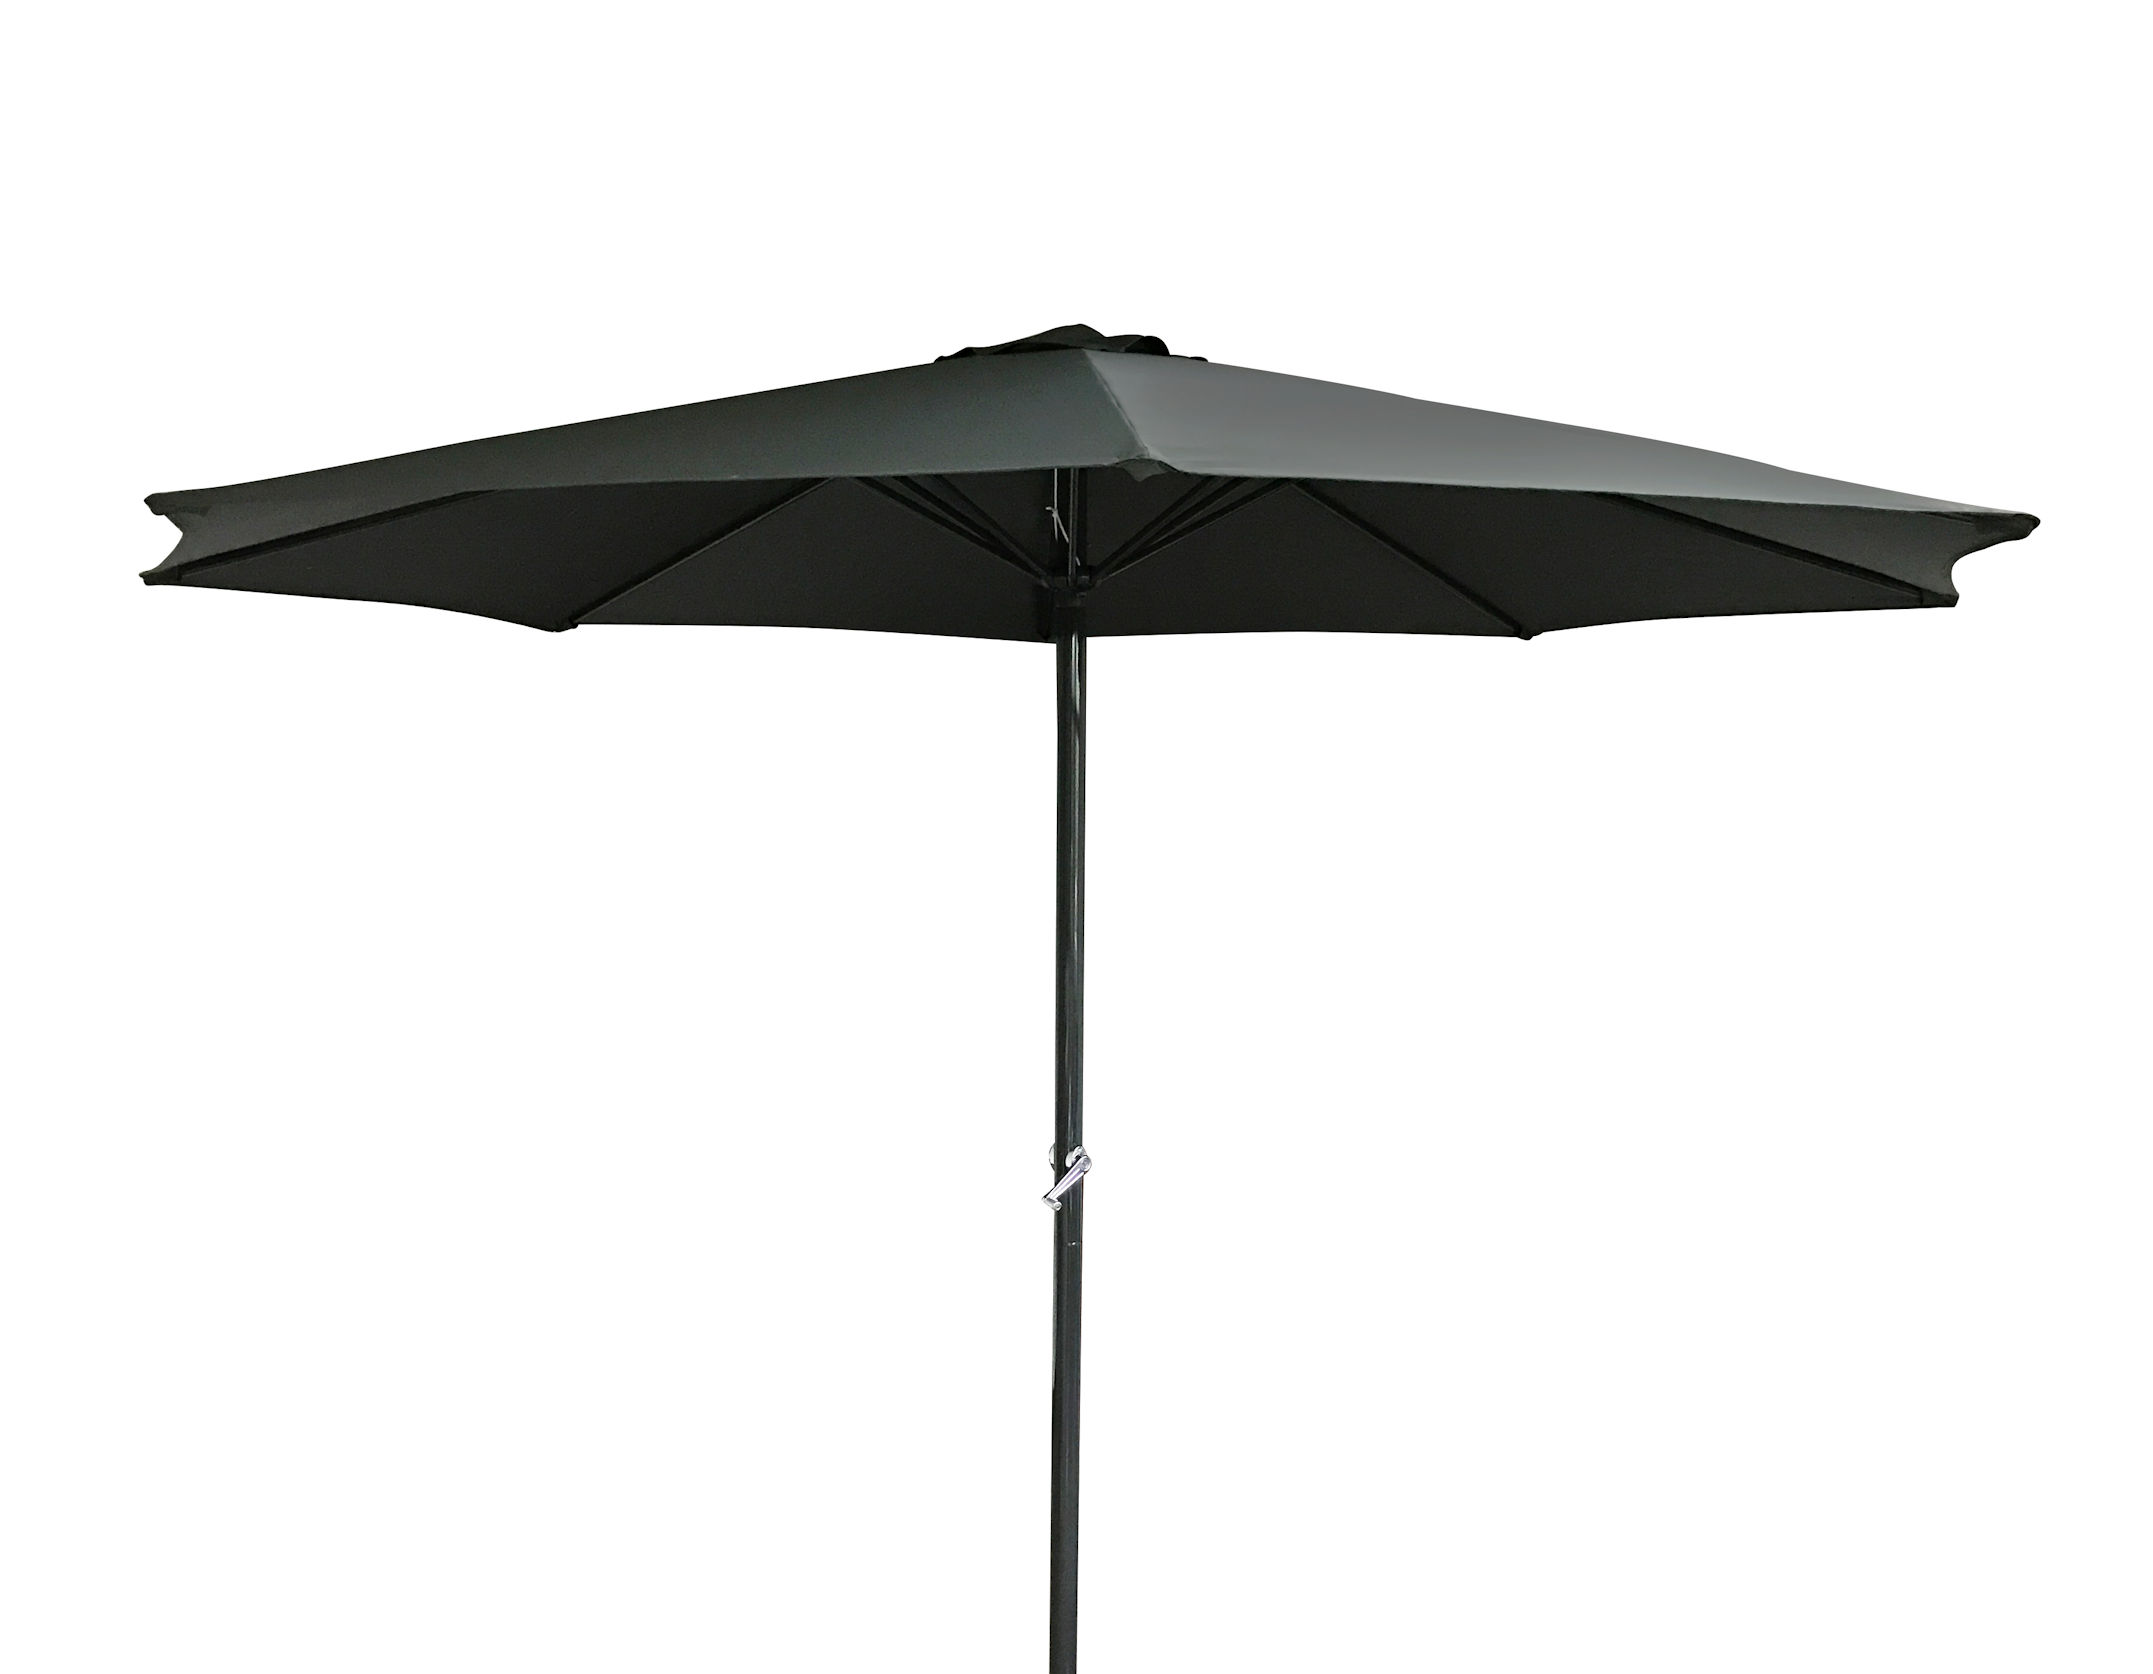 beige Kurbel Schirm Terrasse Marktschirm 300 cm Alu Landhaus Sonnenschirm 3m 